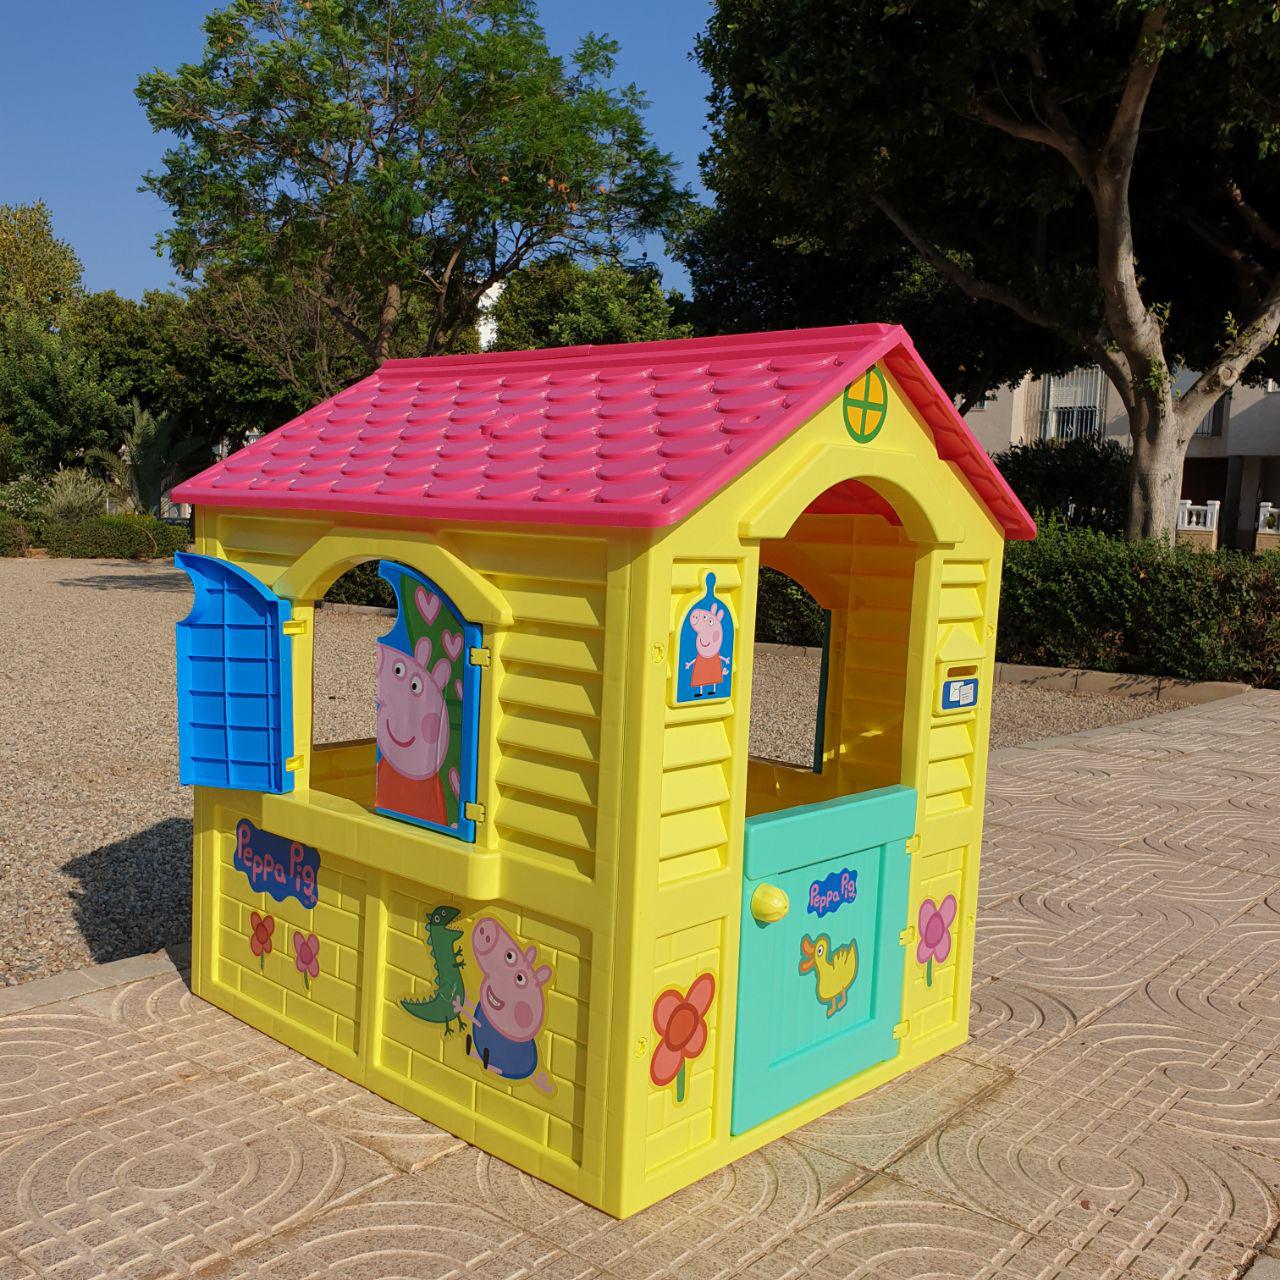 Casa para jardín infantil para niños y niñas. Casa juguete Peppa Pig grande Casa infantil para exterior jardín de Peppa Pig BricoLoco 